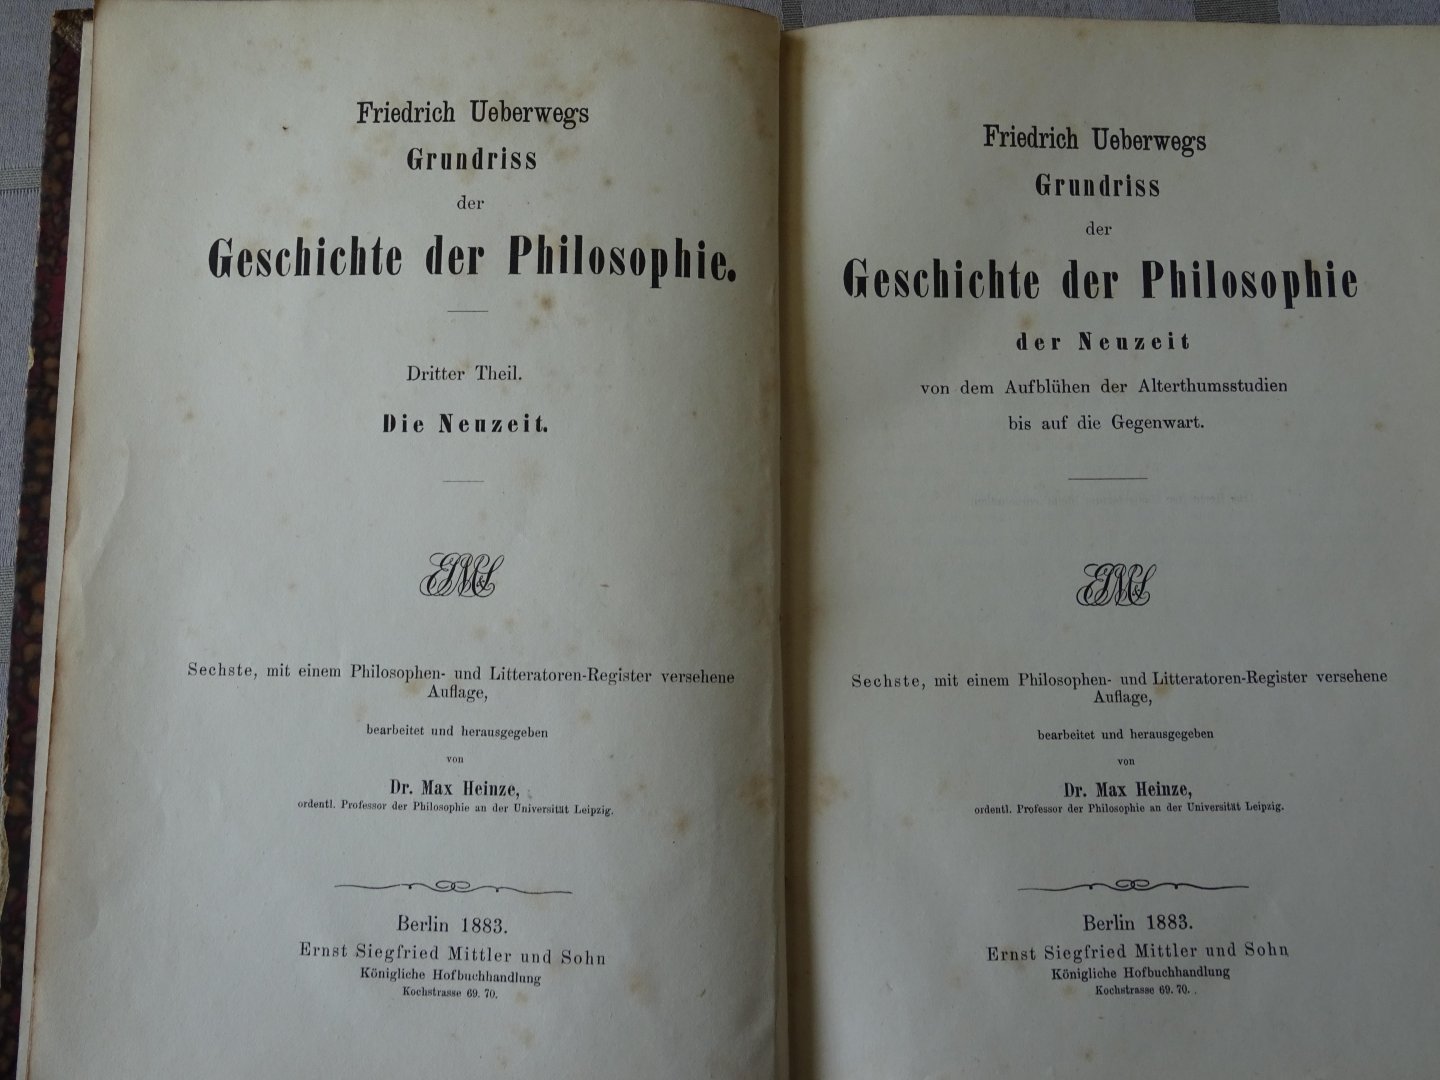 Ueberwegs, Friedrich - Grundriss der Geschichte der Philosophie (dritter Teil) der Neuzeit von dem Aufblühen der Altertumsstudieen bis auf die Gegenwart